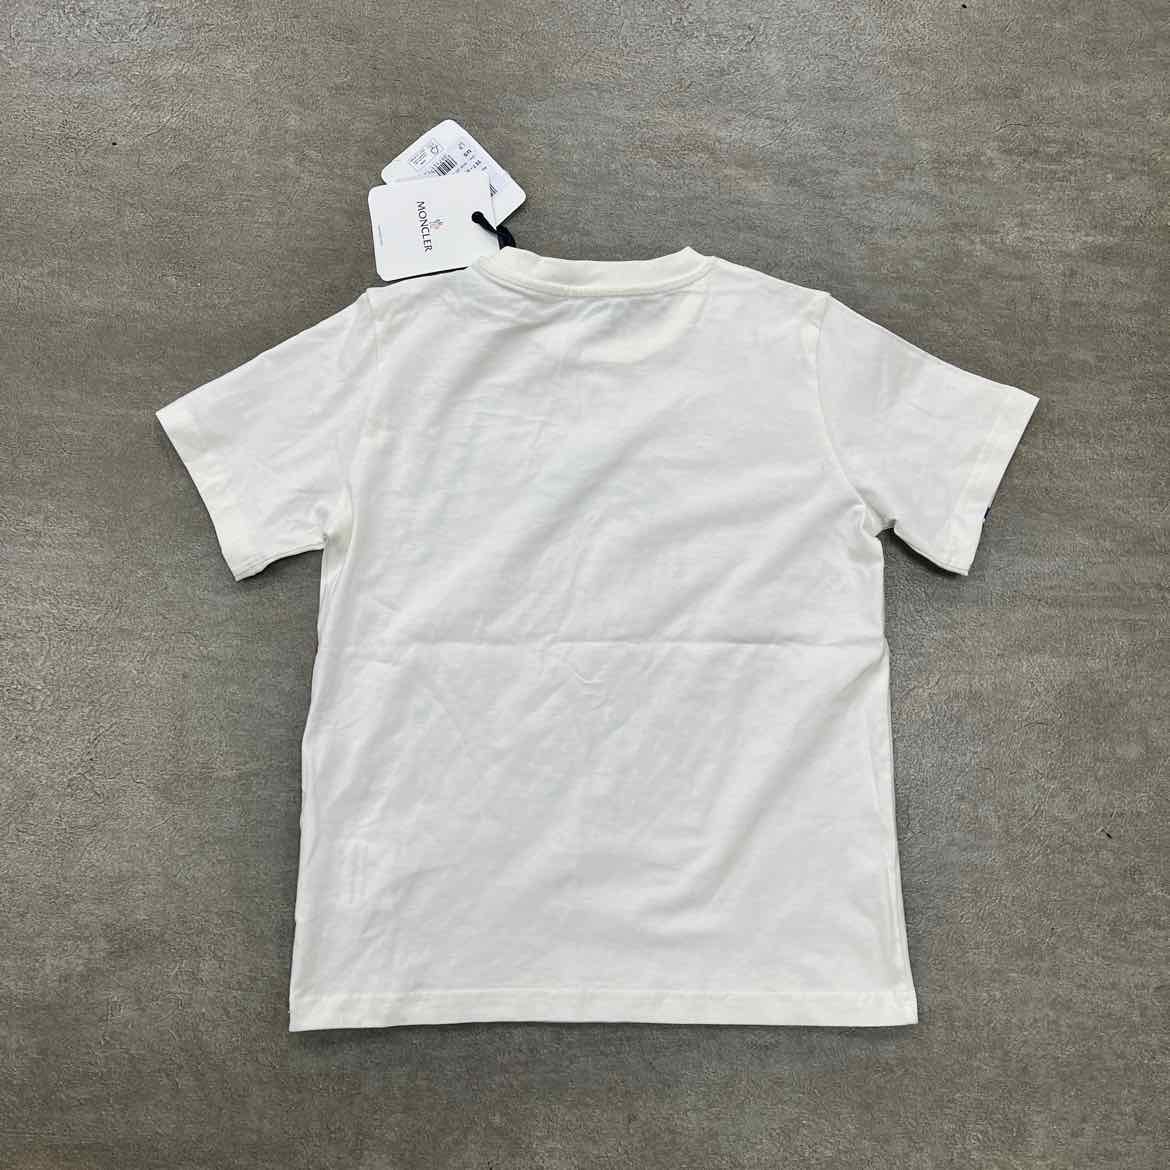 Moncler T-Shirt &quot;STRIPES&quot; White New Size 10